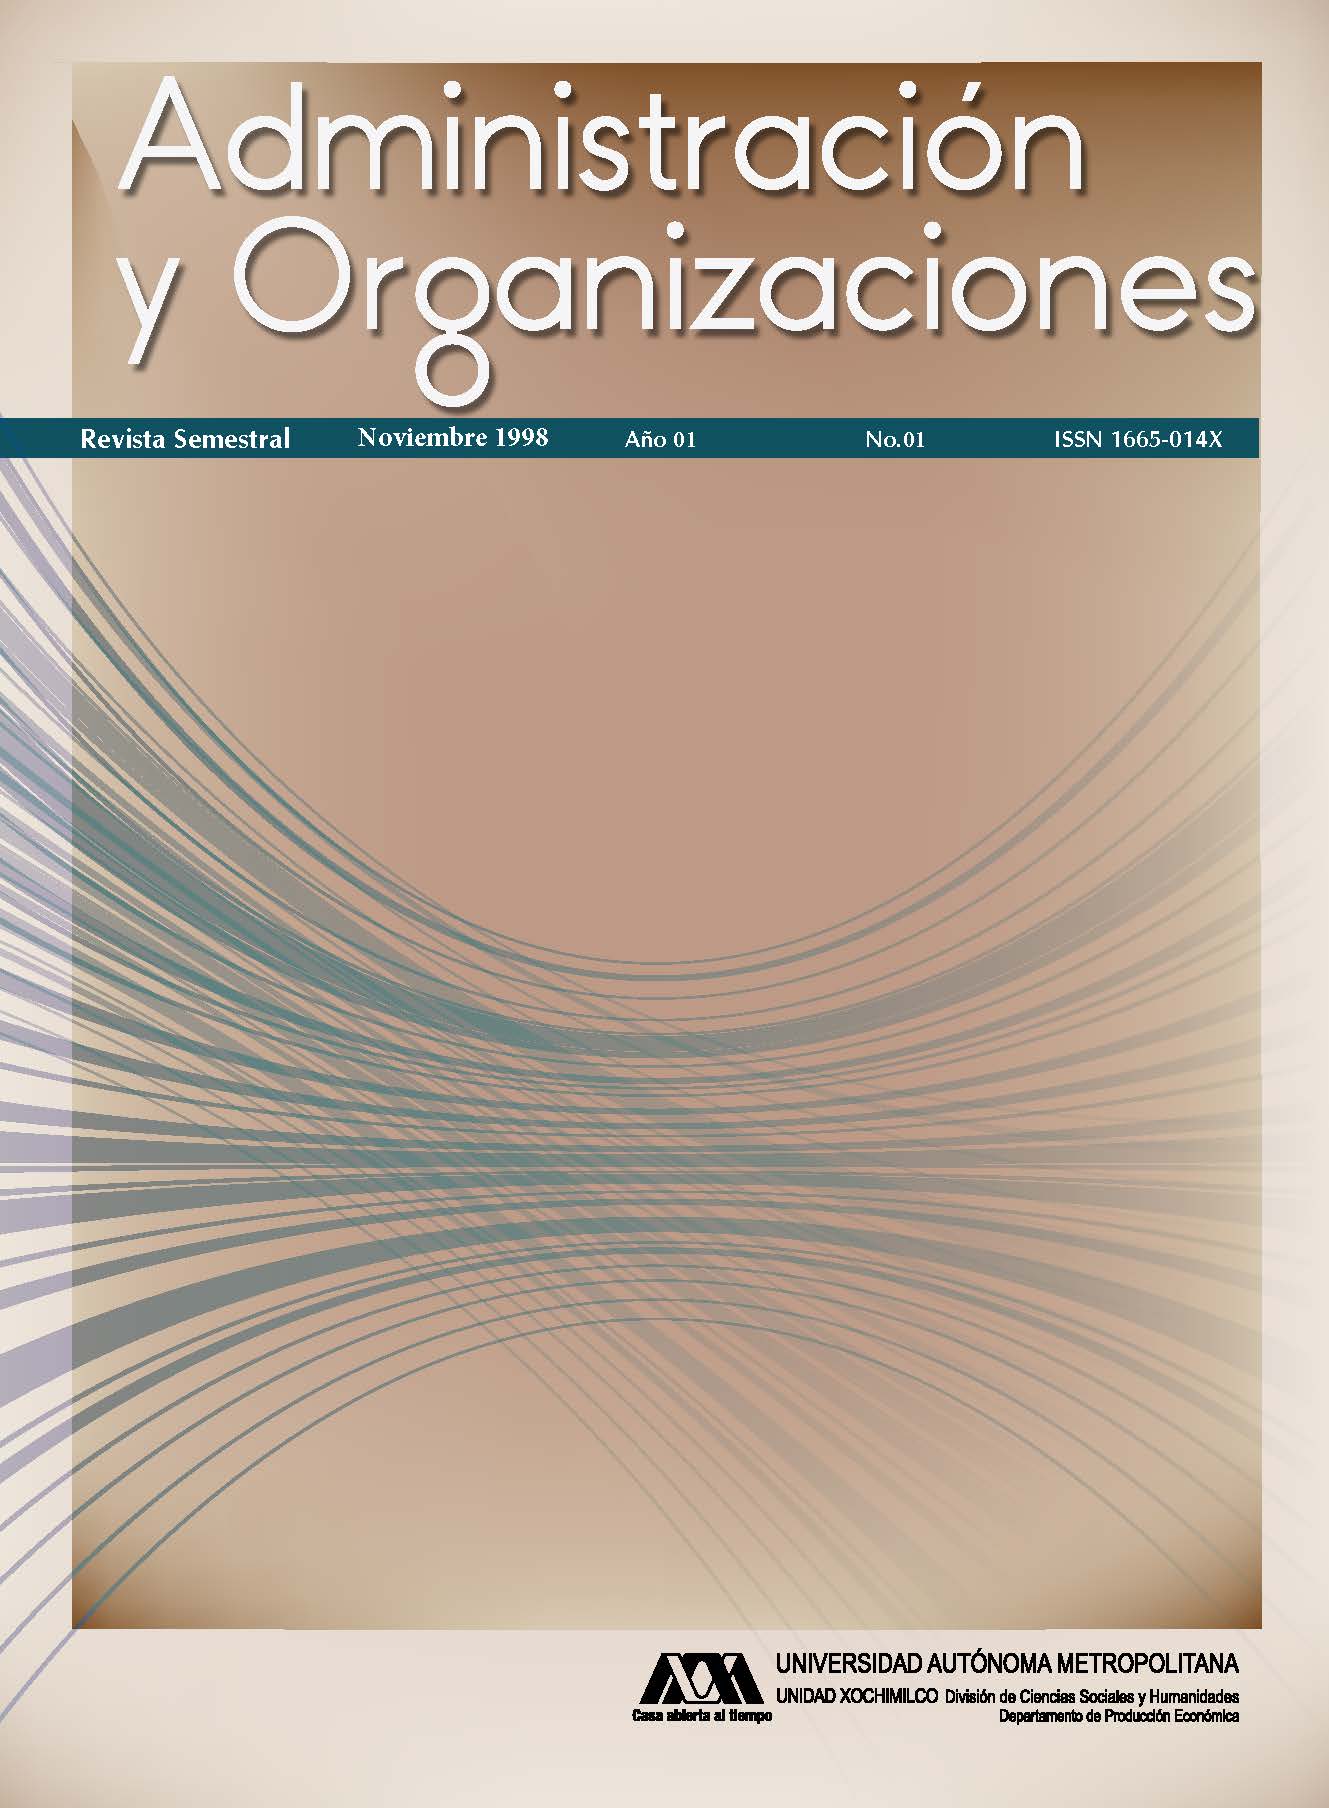 					View Vol. 1 No. 01 (1): Administración y Organizaciones
				